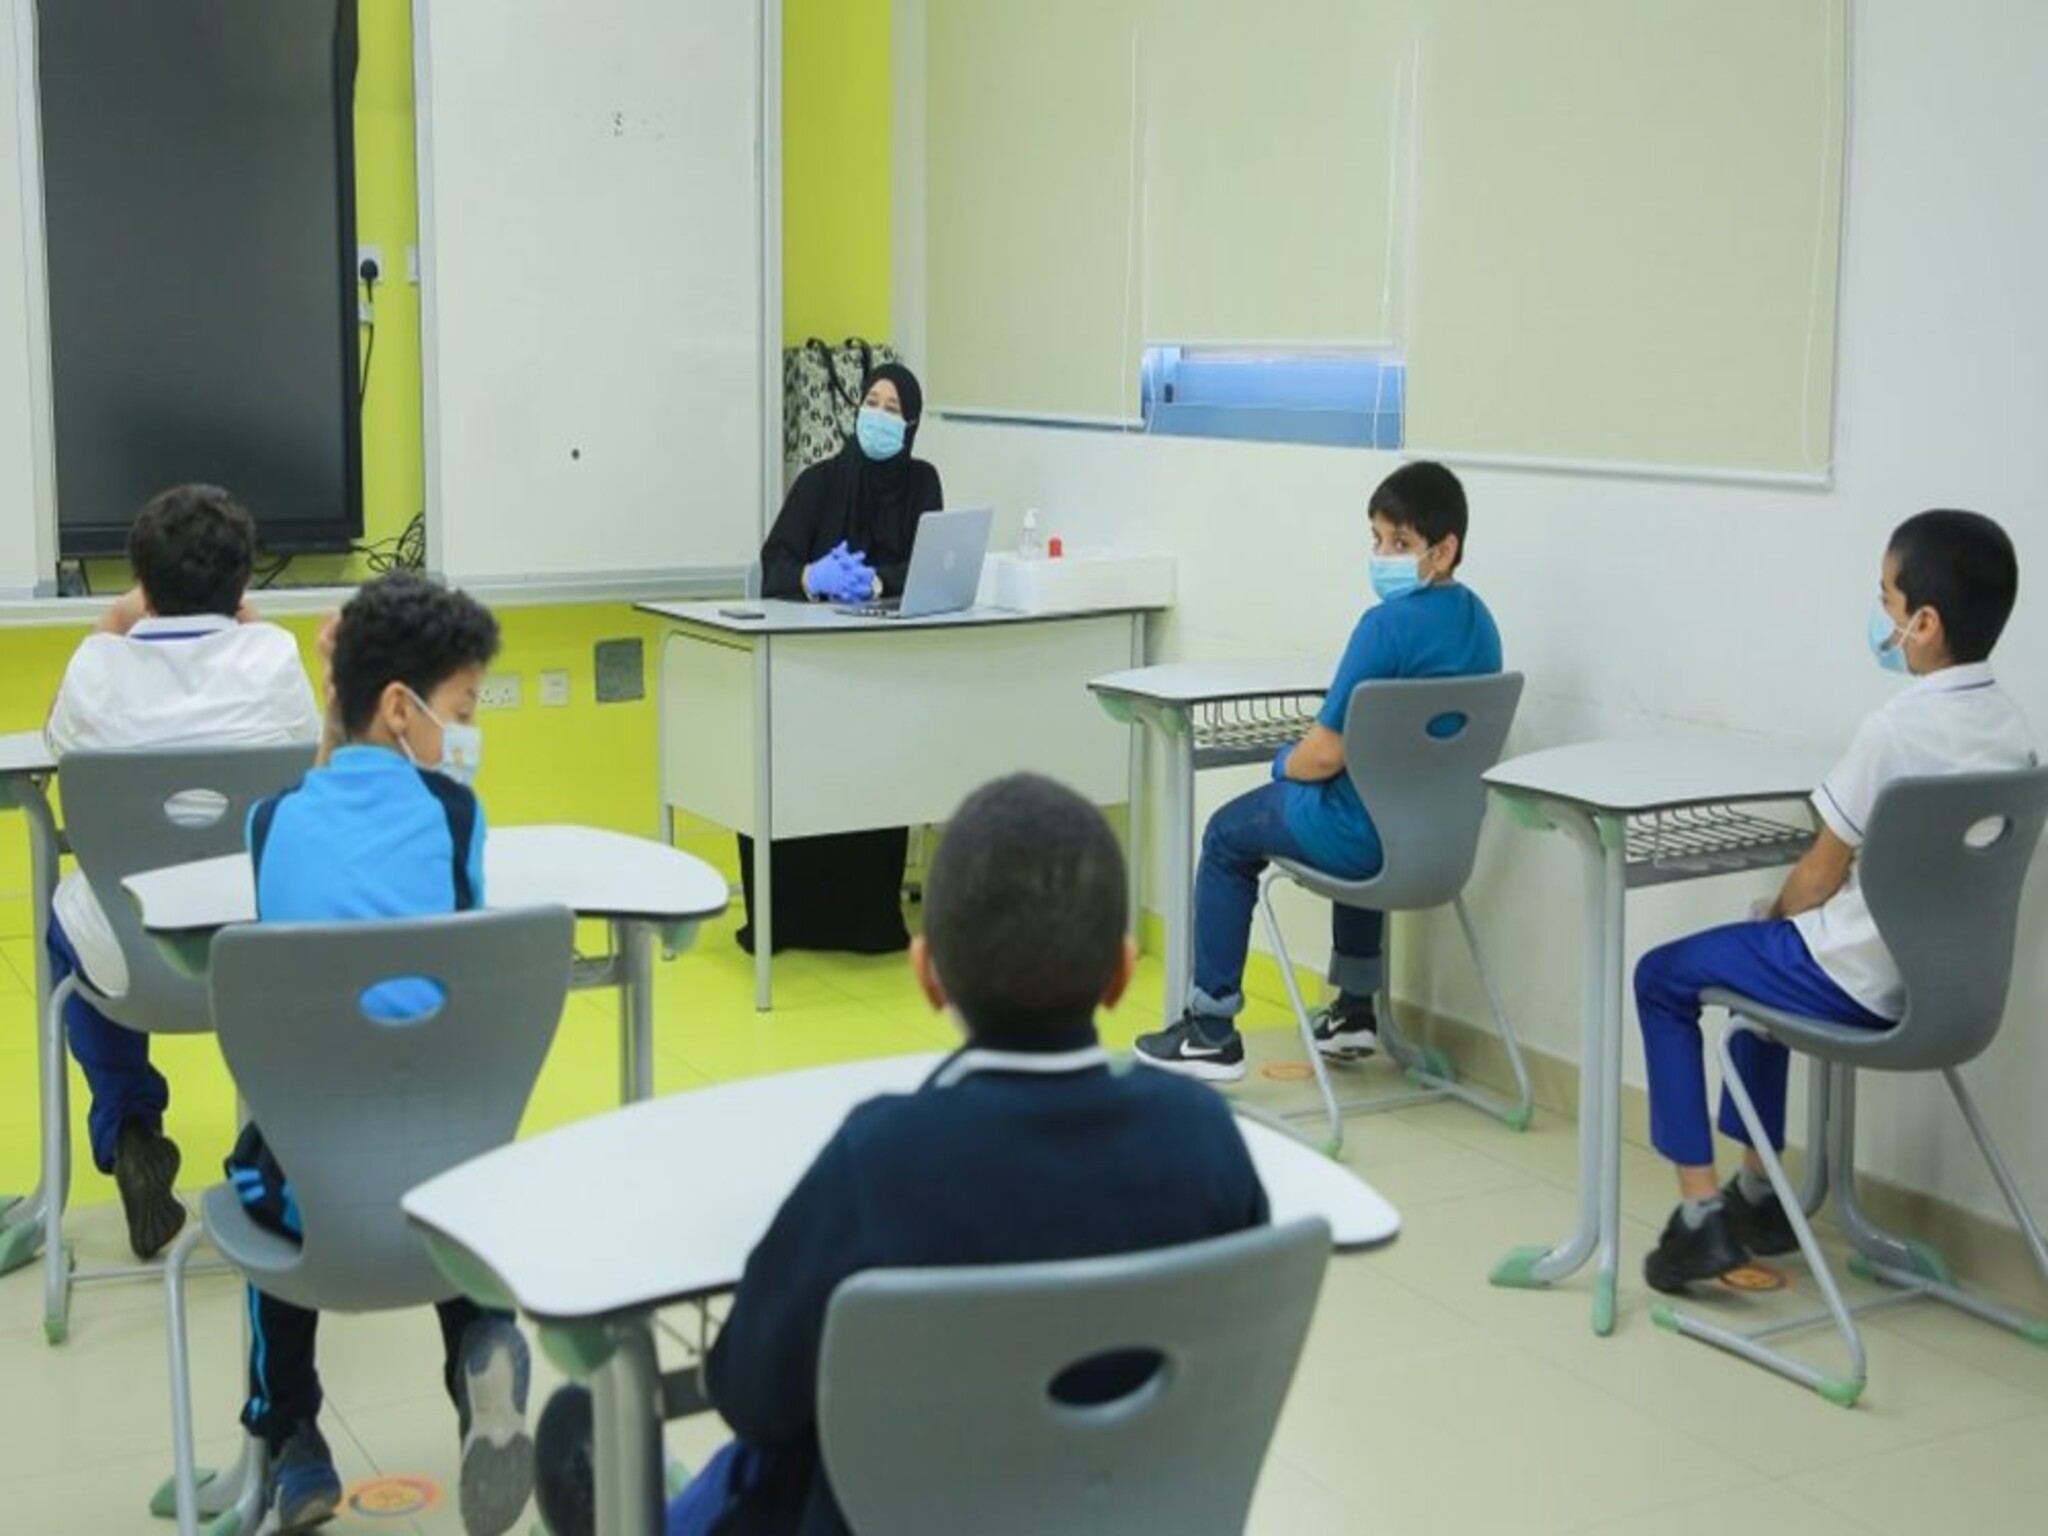 مواعيد تسجيل الطلاب المقيمين في المدارس الحكومية في الإمارات